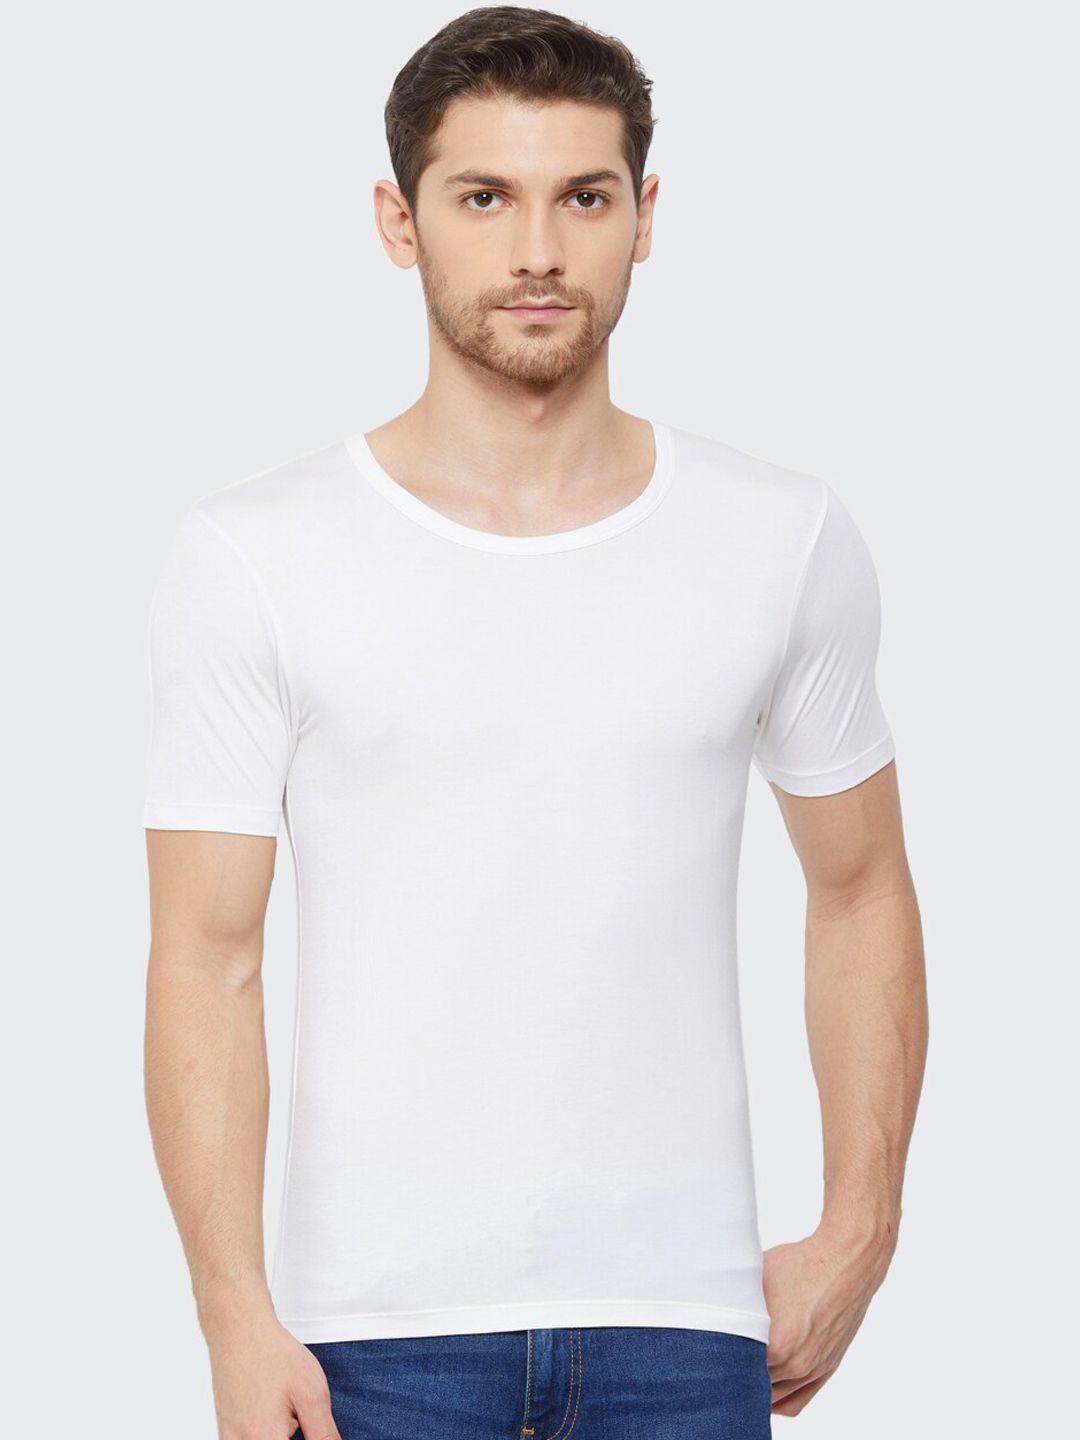 almo wear men white solid undershirt vest